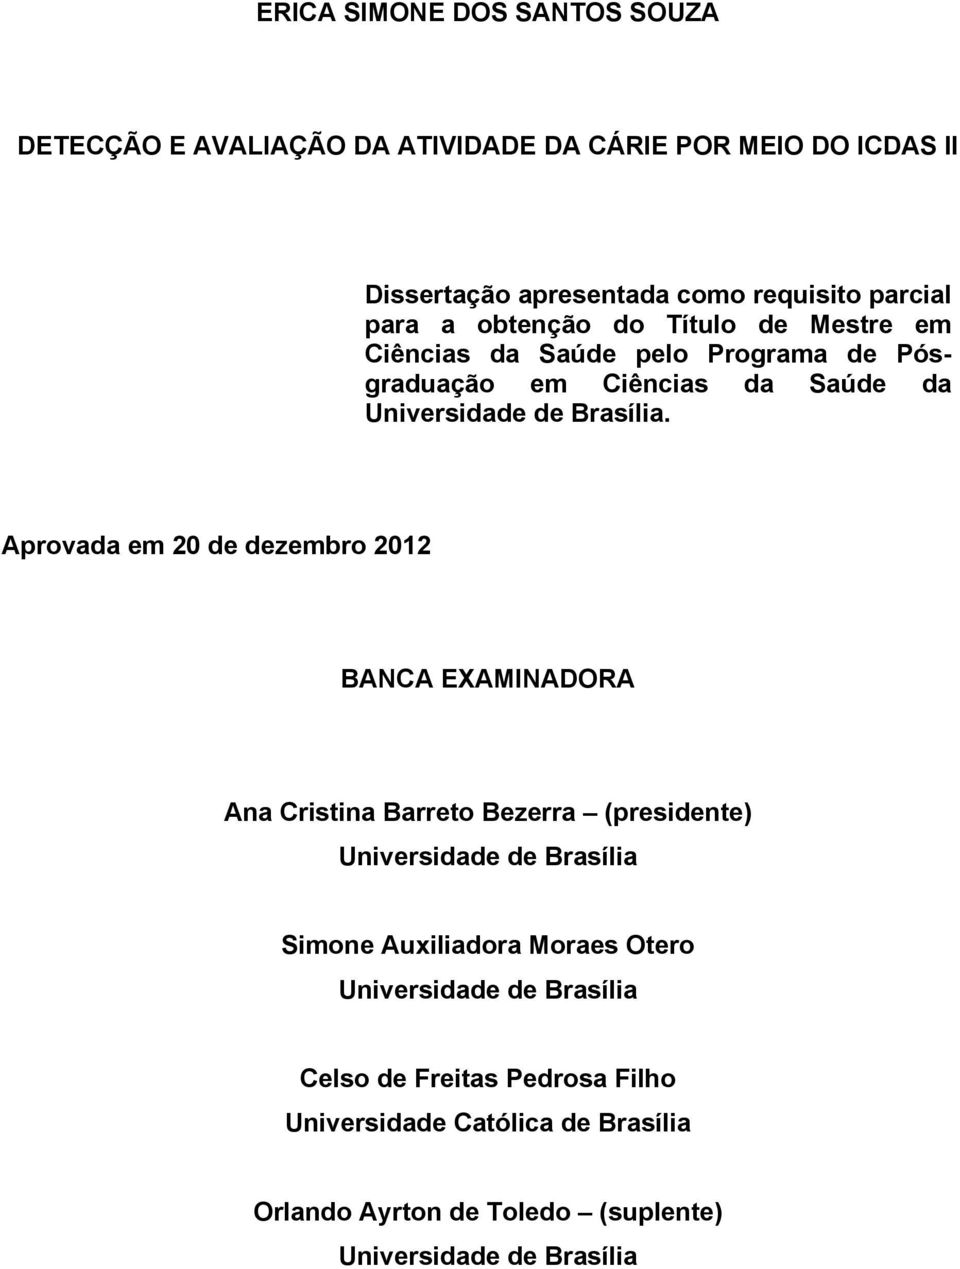 Aprovada em 20 de dezembro 2012 BANCA EXAMINADORA Ana Cristina Barreto Bezerra (presidente) Universidade de Brasília Simone Auxiliadora Moraes